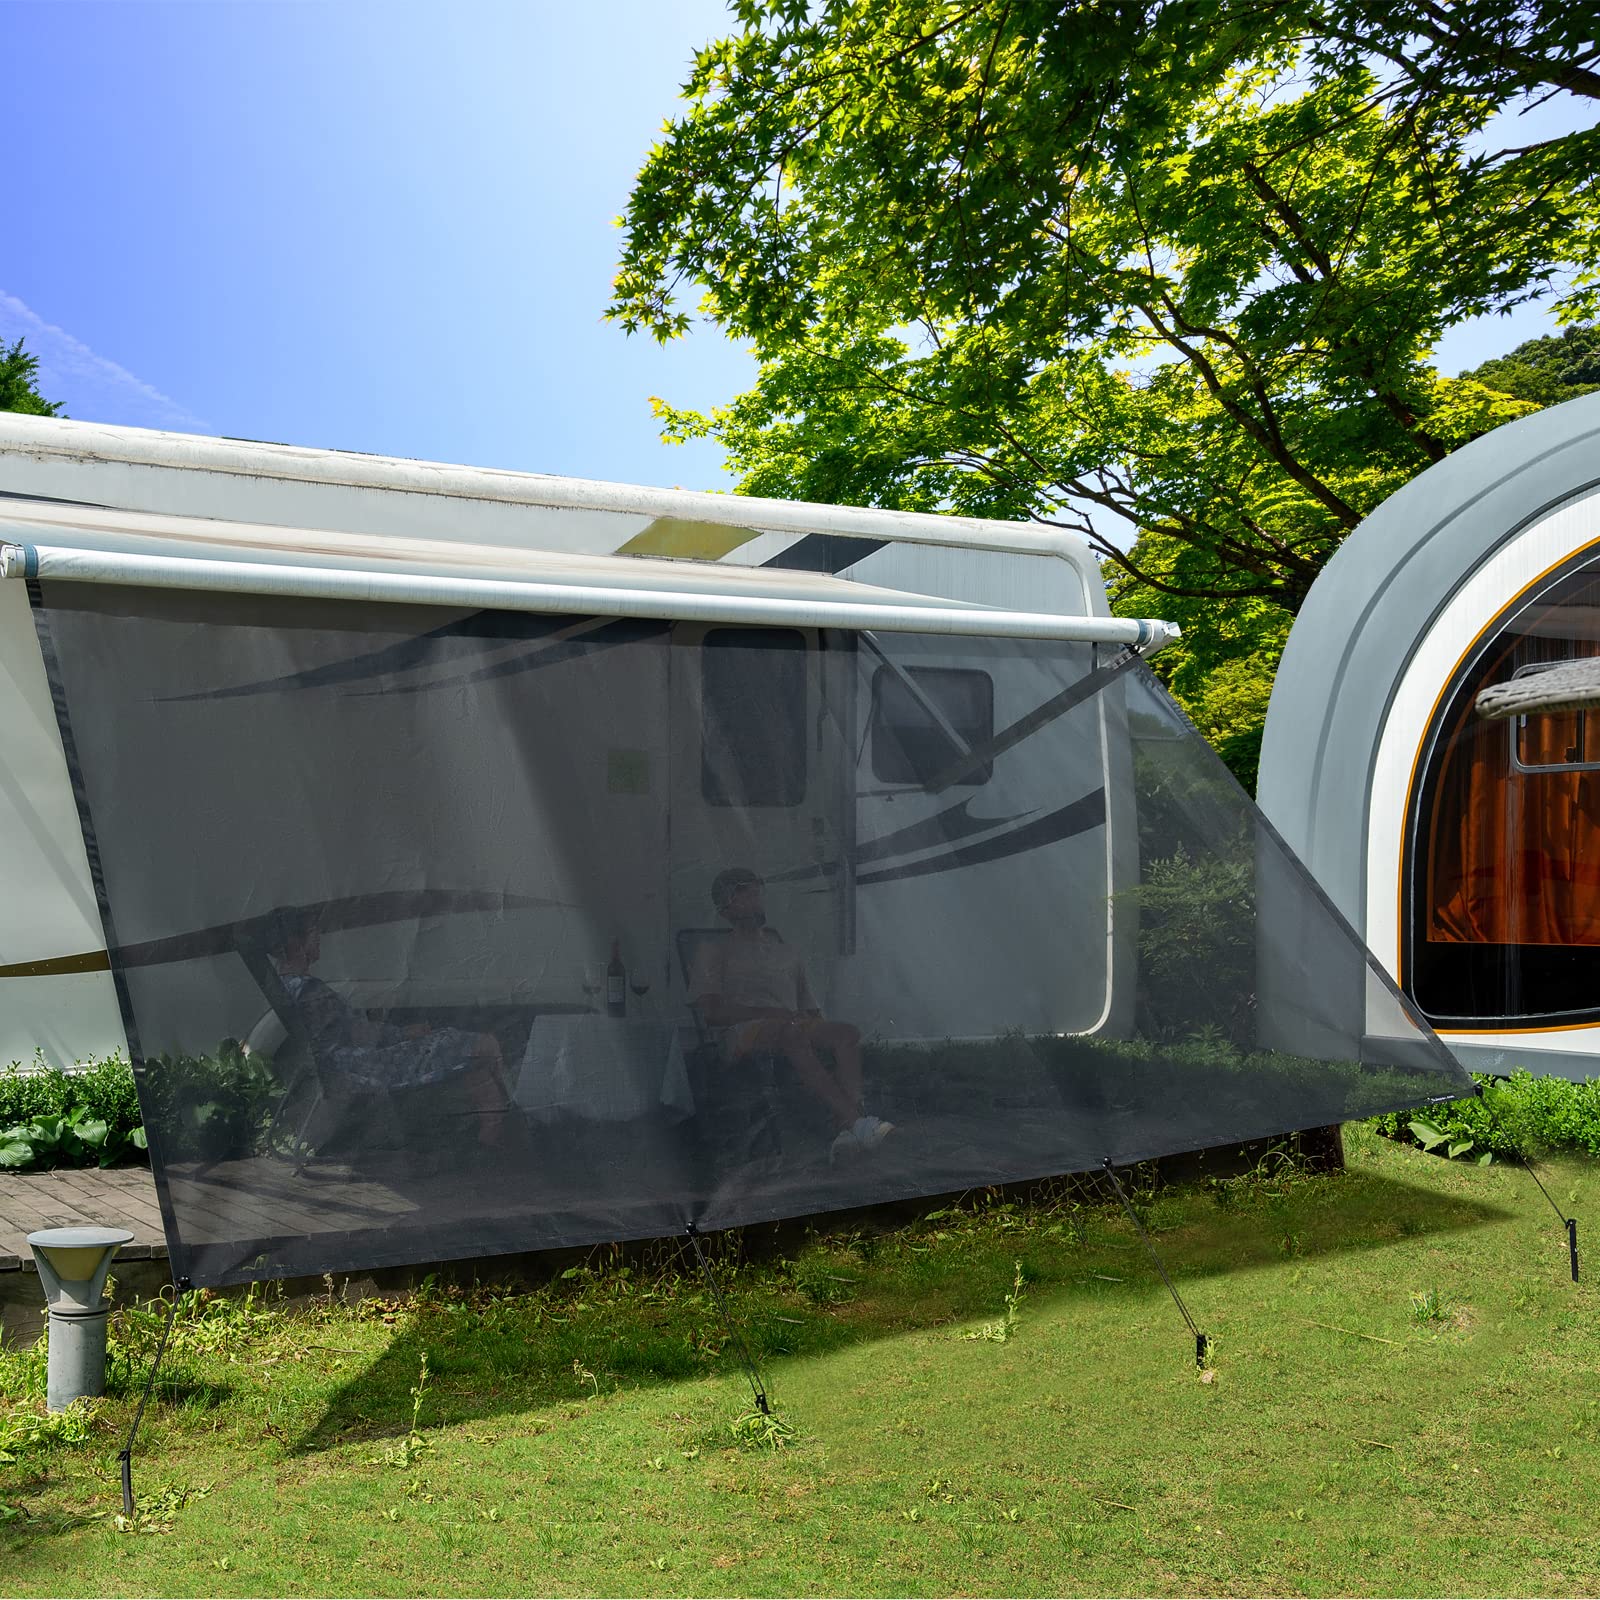 Wohnmobil View Blocker Sonnenschutz, universeller RV Markisen Sichtschutz Vorderwand Bildschirm, 2,46 m x 3,85 m, mit kompletten Kits. von Dulepax